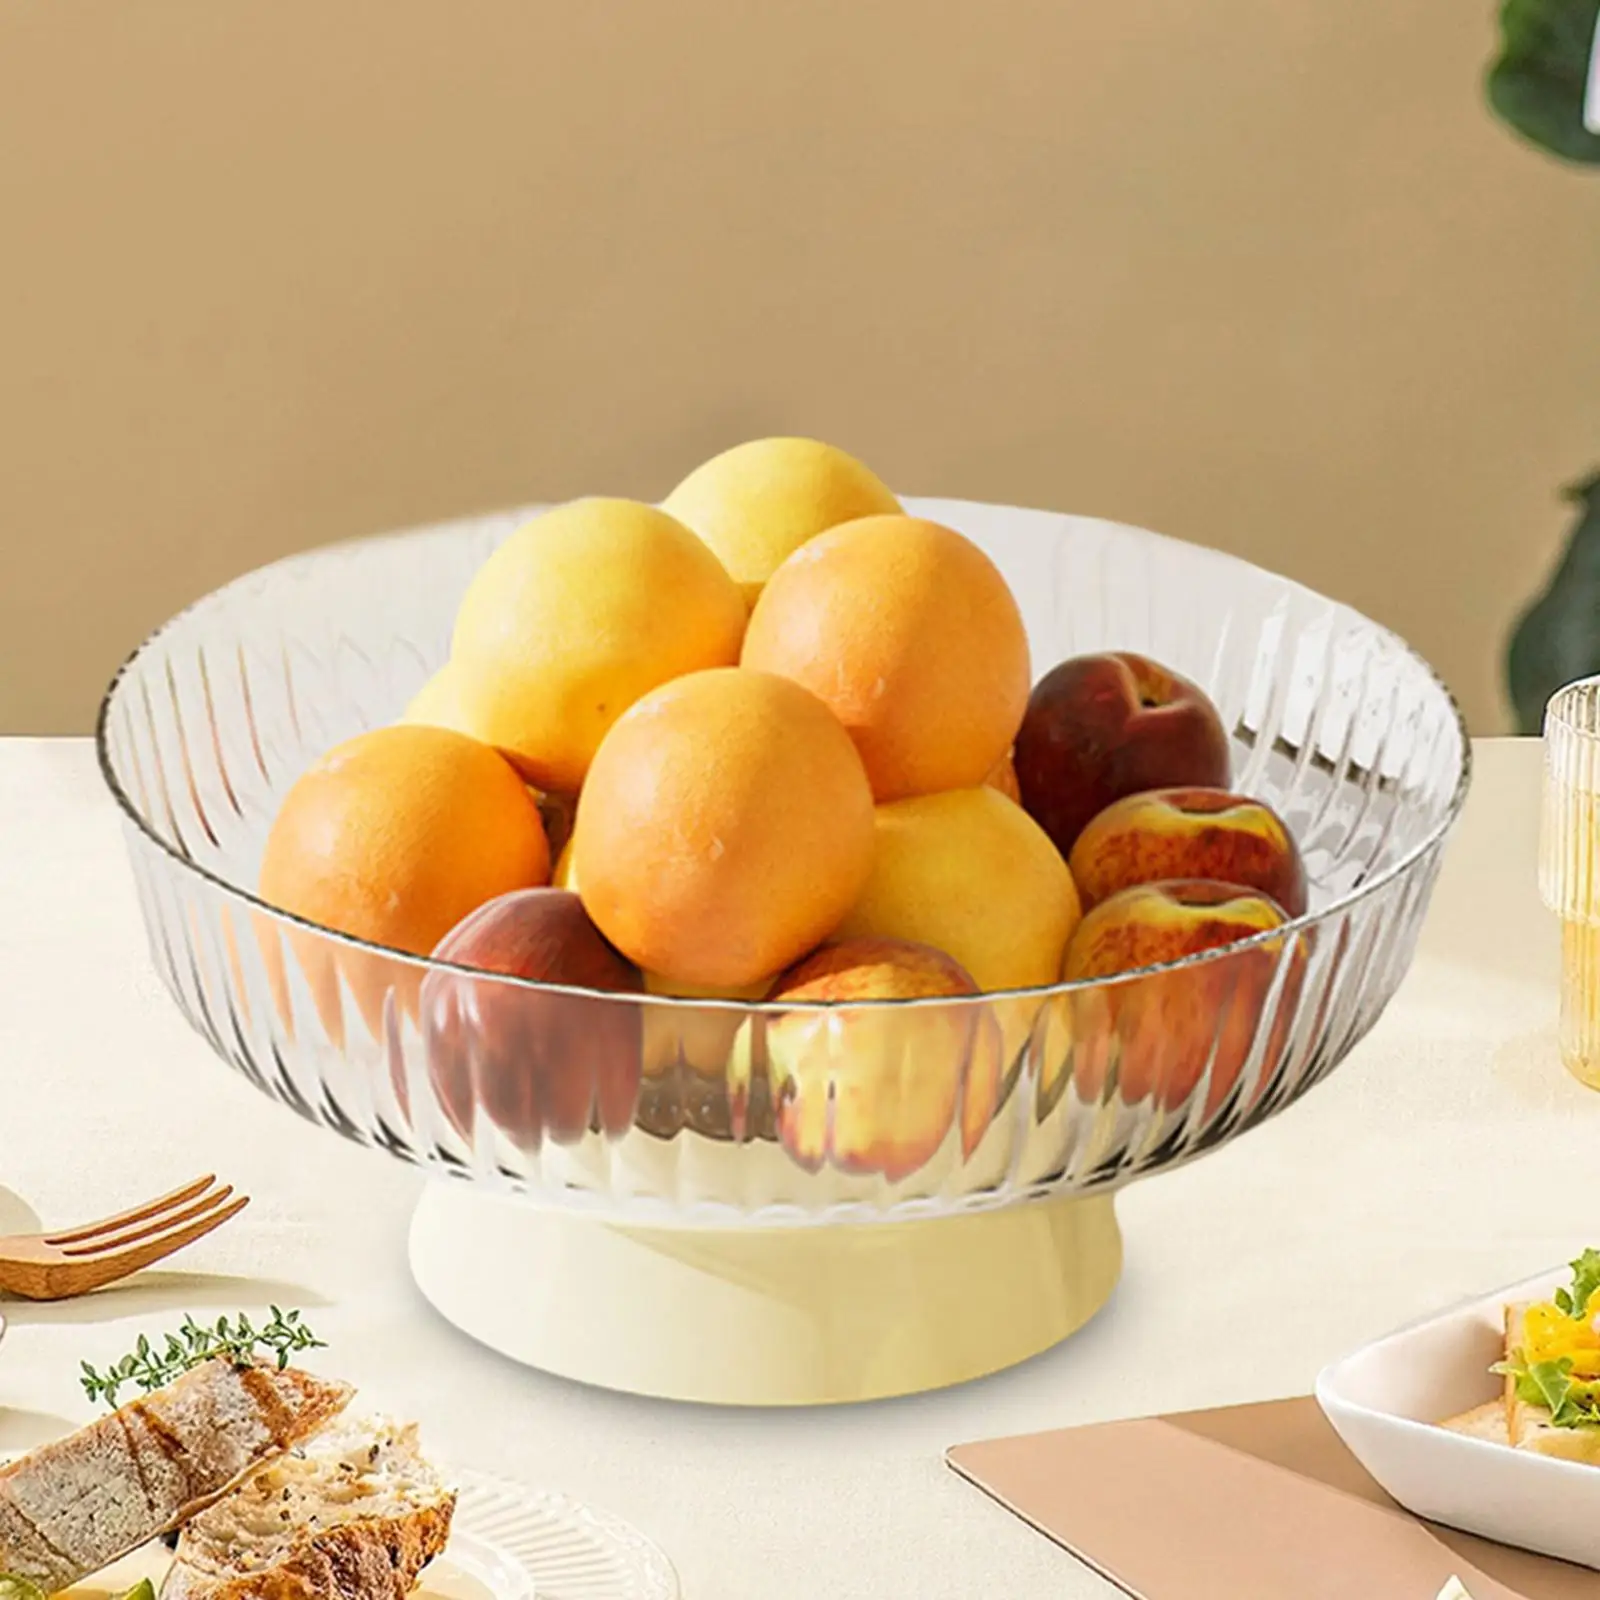 Decorative Pedestal Bowl Food Plate Fruit and Vegetable Holder for Living Room